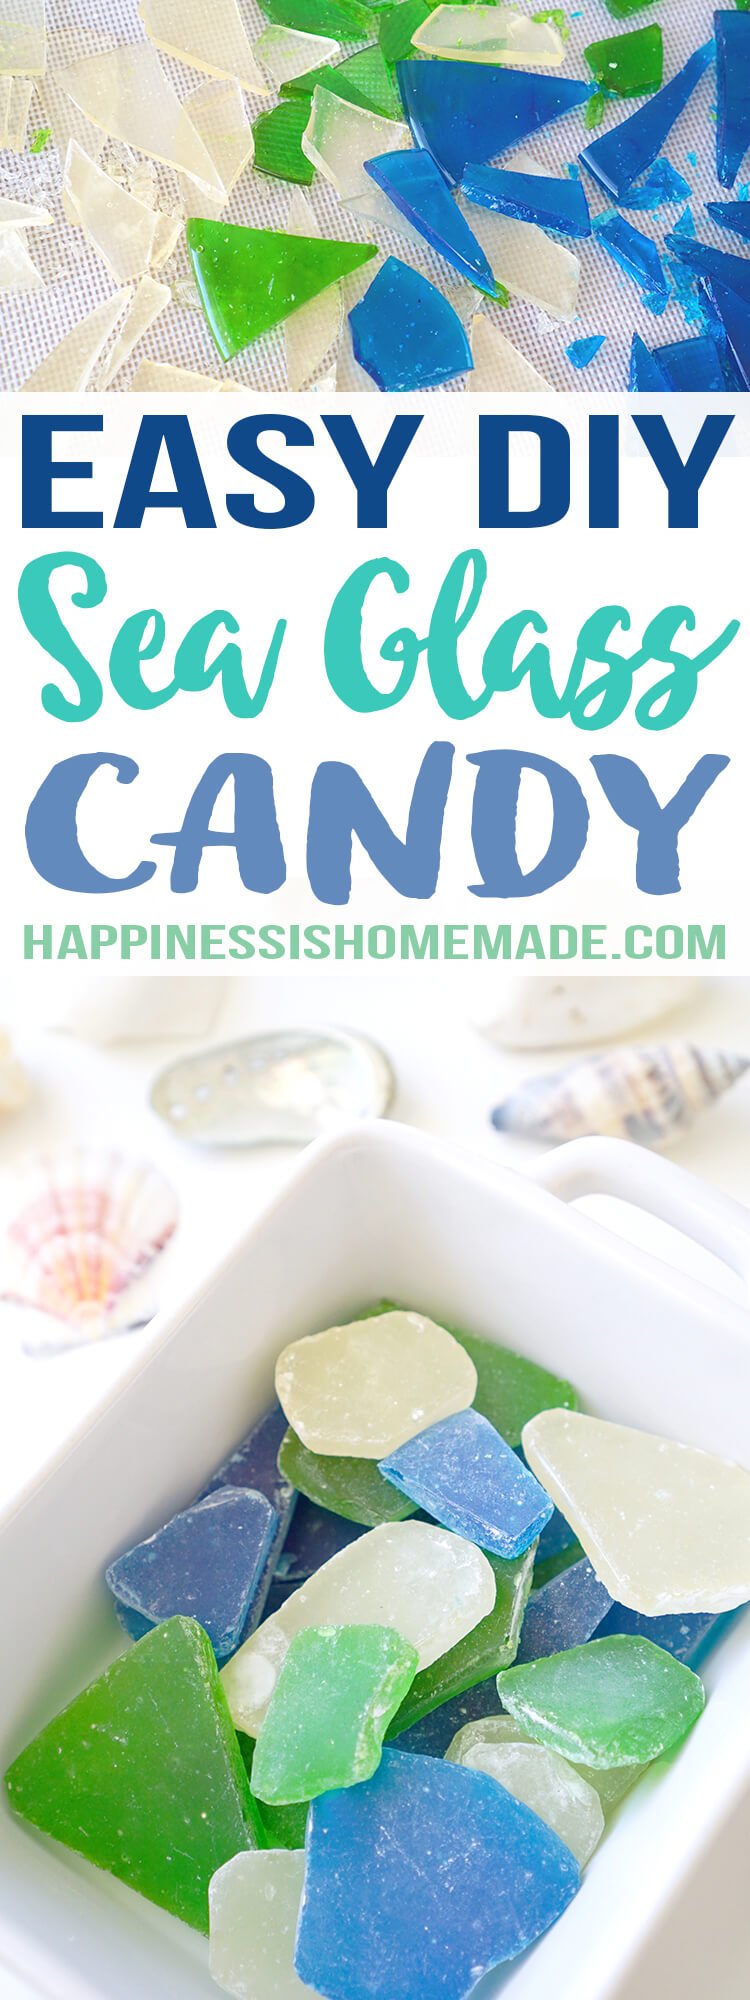 Easy DIY Edible Sea Glass Candy